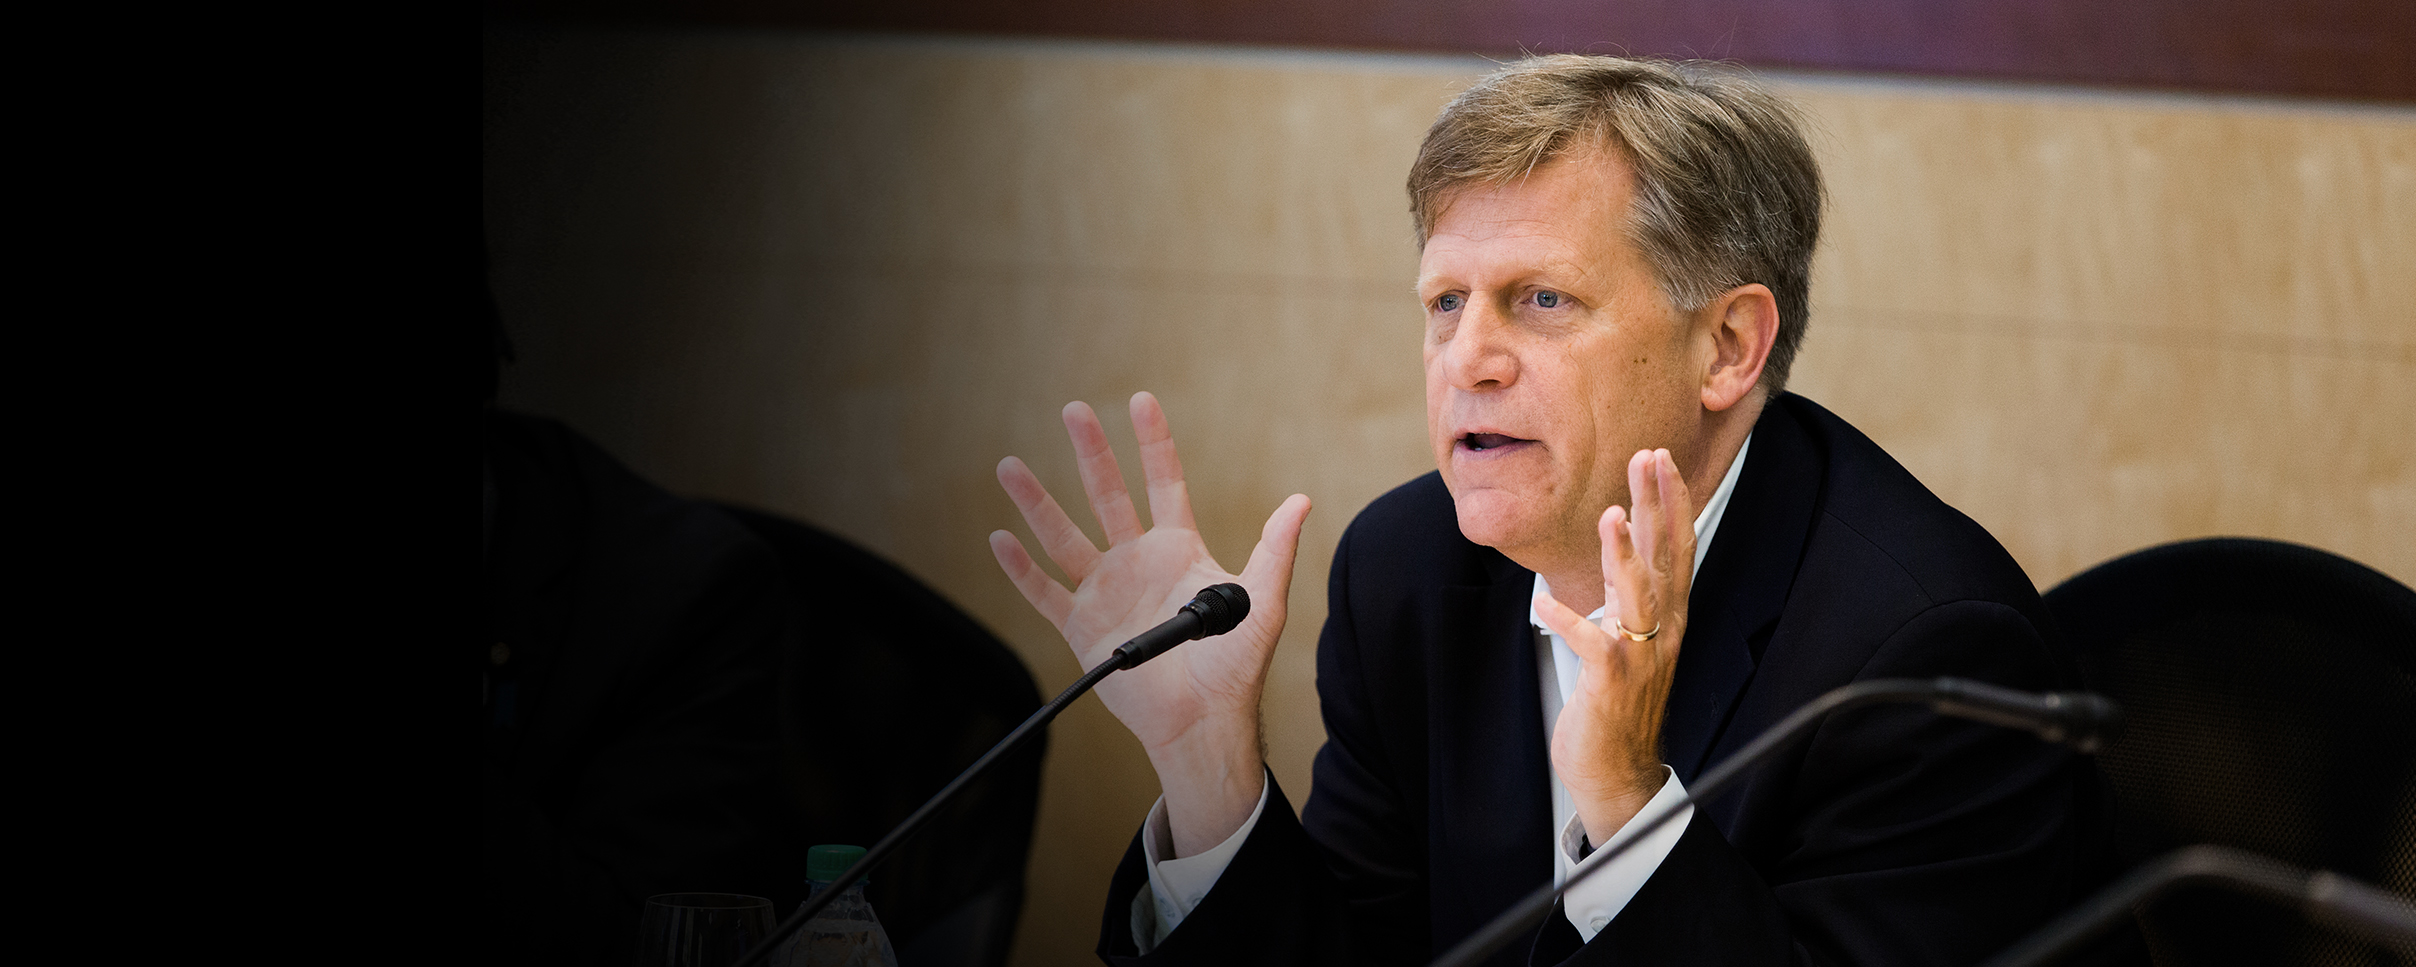 Michael McFaul Action Shot